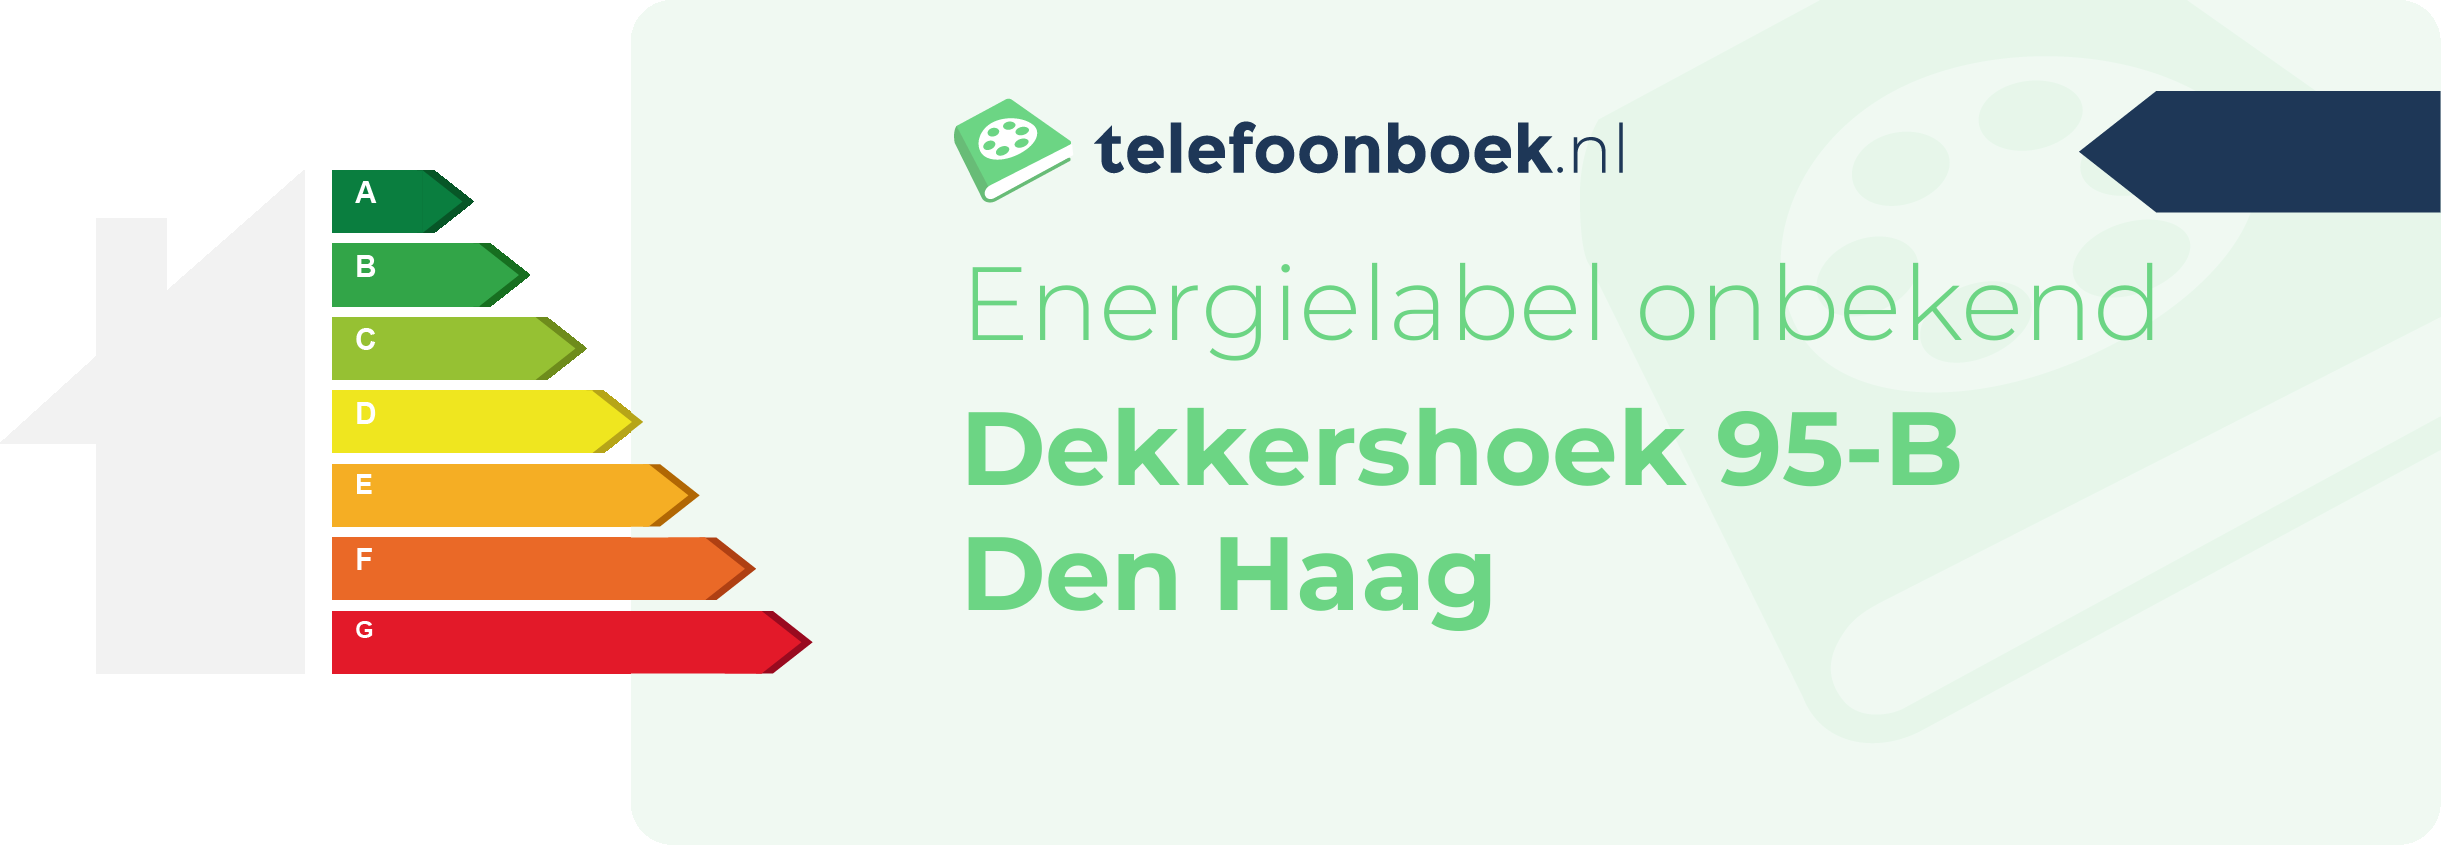 Energielabel Dekkershoek 95-B Den Haag